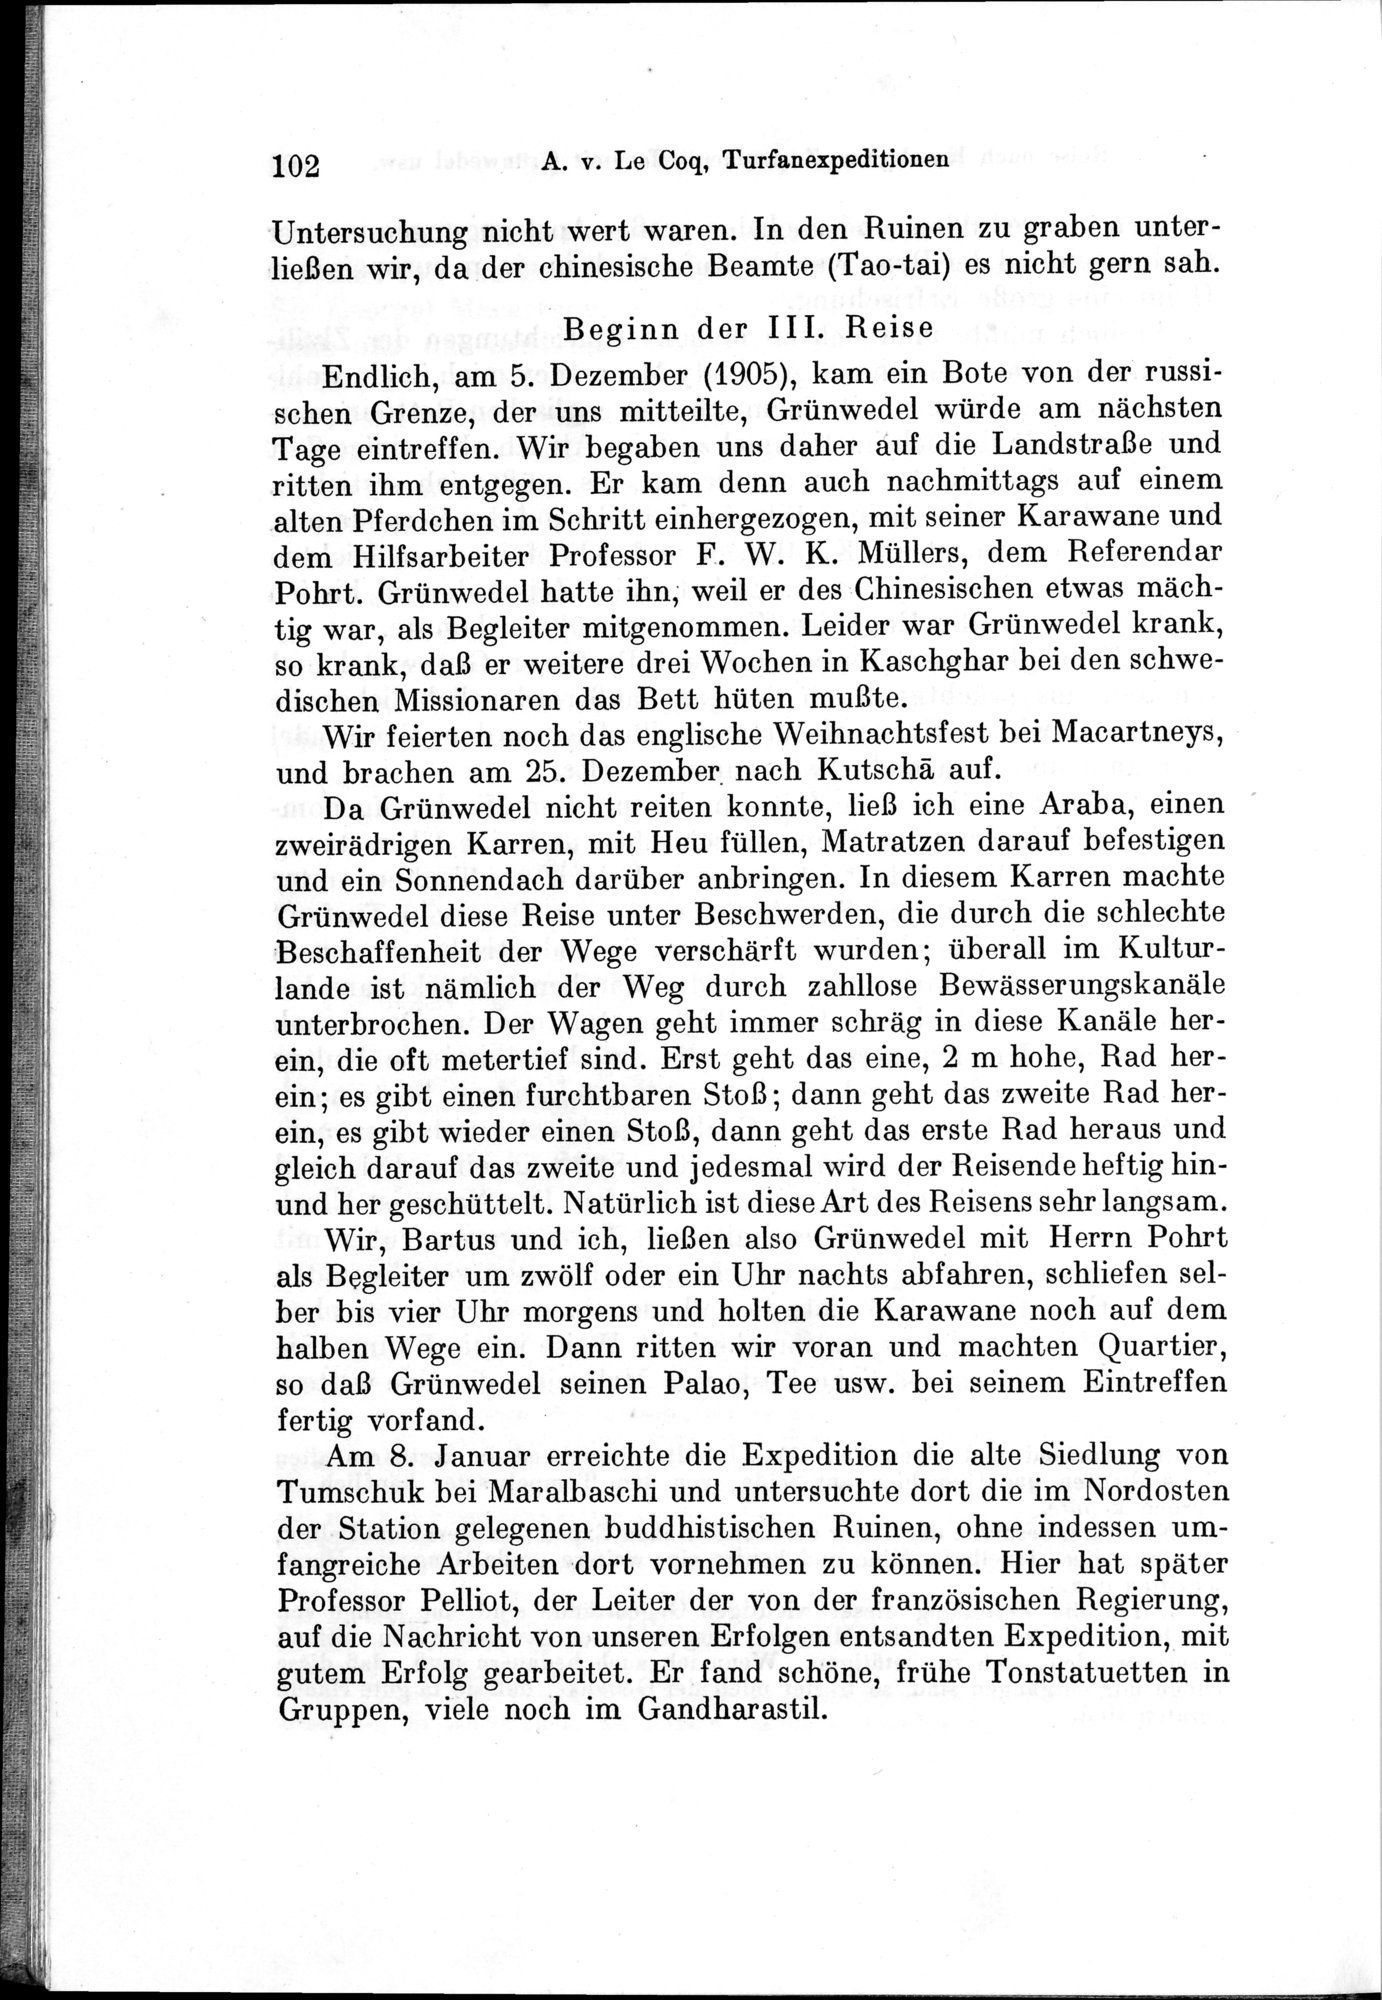 Auf Hellas Spuren in Ostturkistan : vol.1 / Page 148 (Grayscale High Resolution Image)